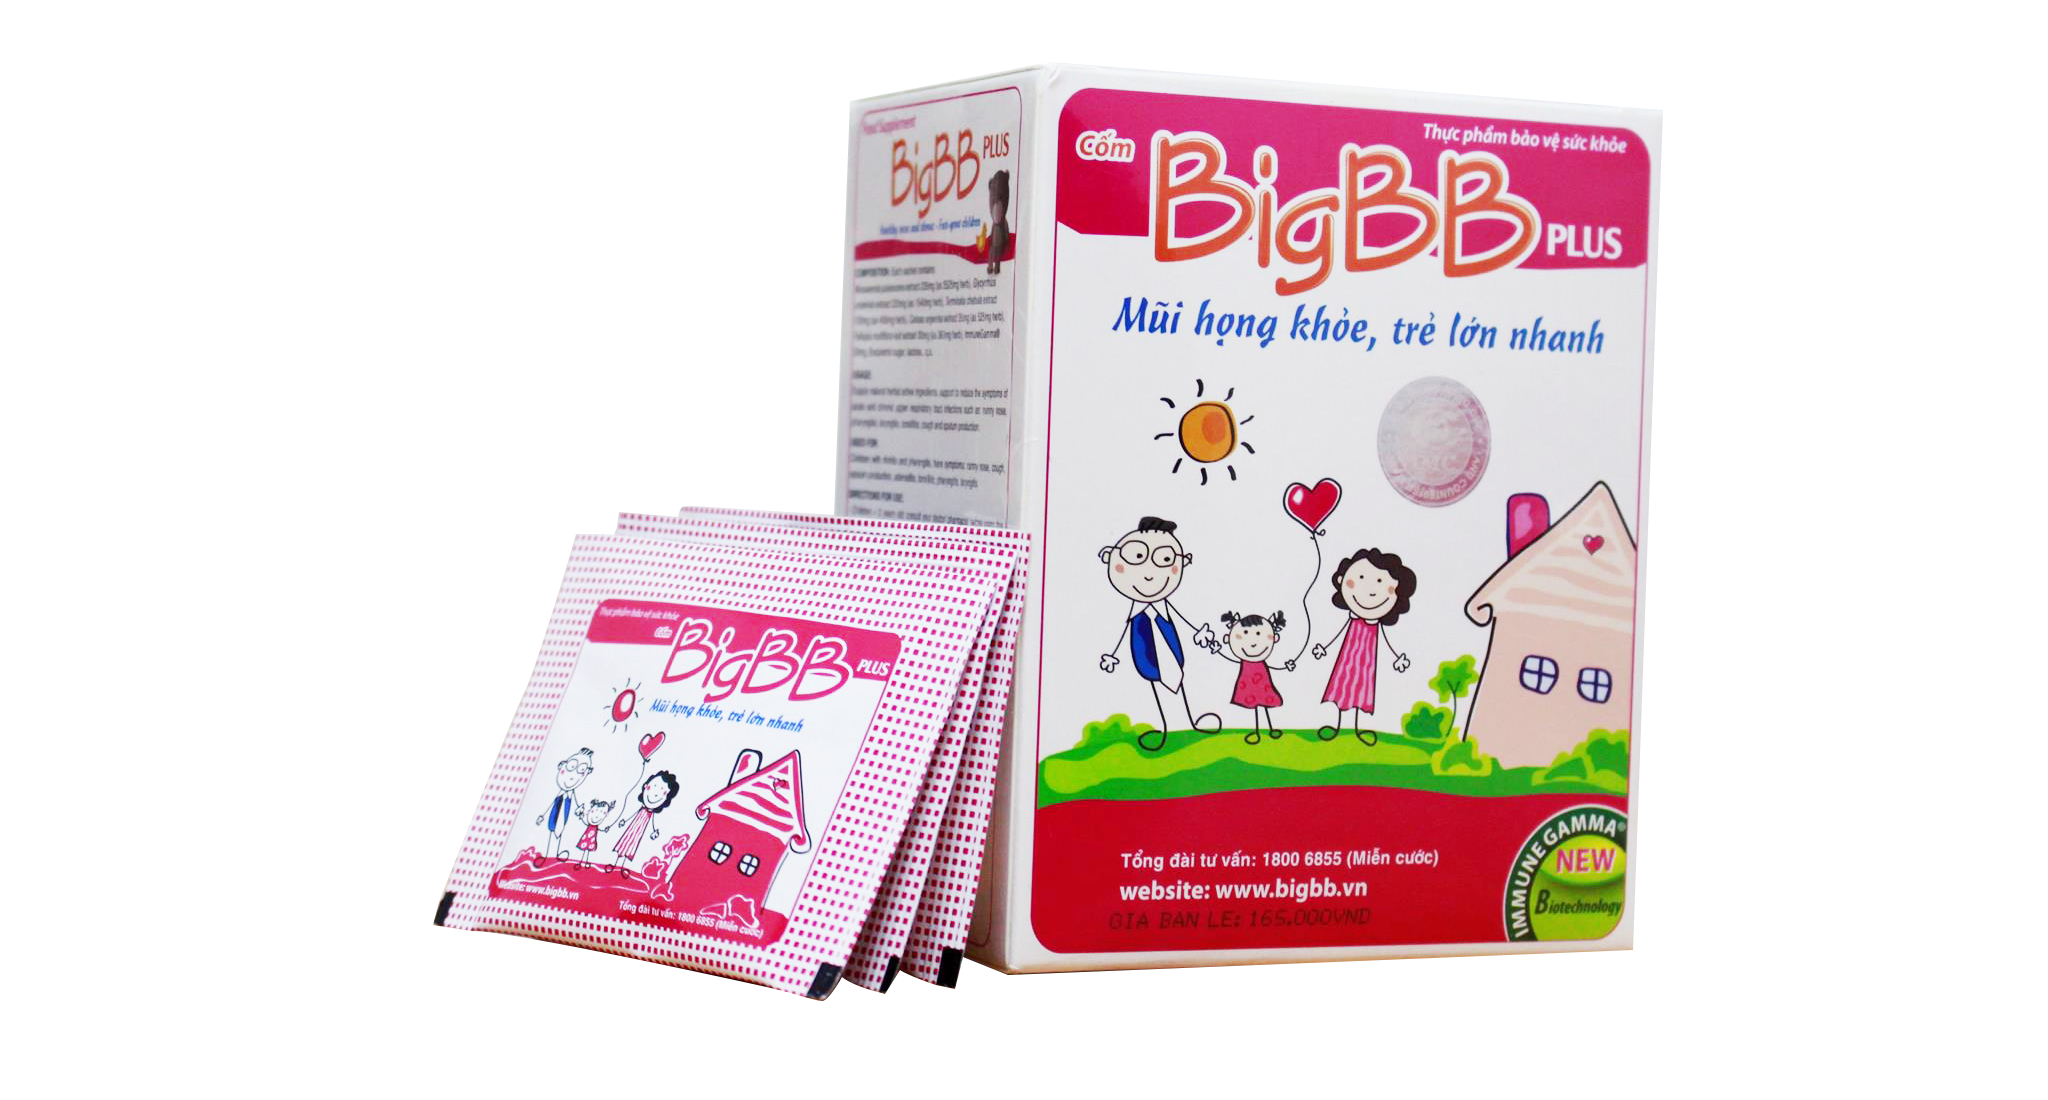 Cốm BigBB Plus nổi bật với tác dụng 3 trong 1: Giải quyết cùng lúc 3 triệu chứng ho đàm, sổ mũi, viêm họng.